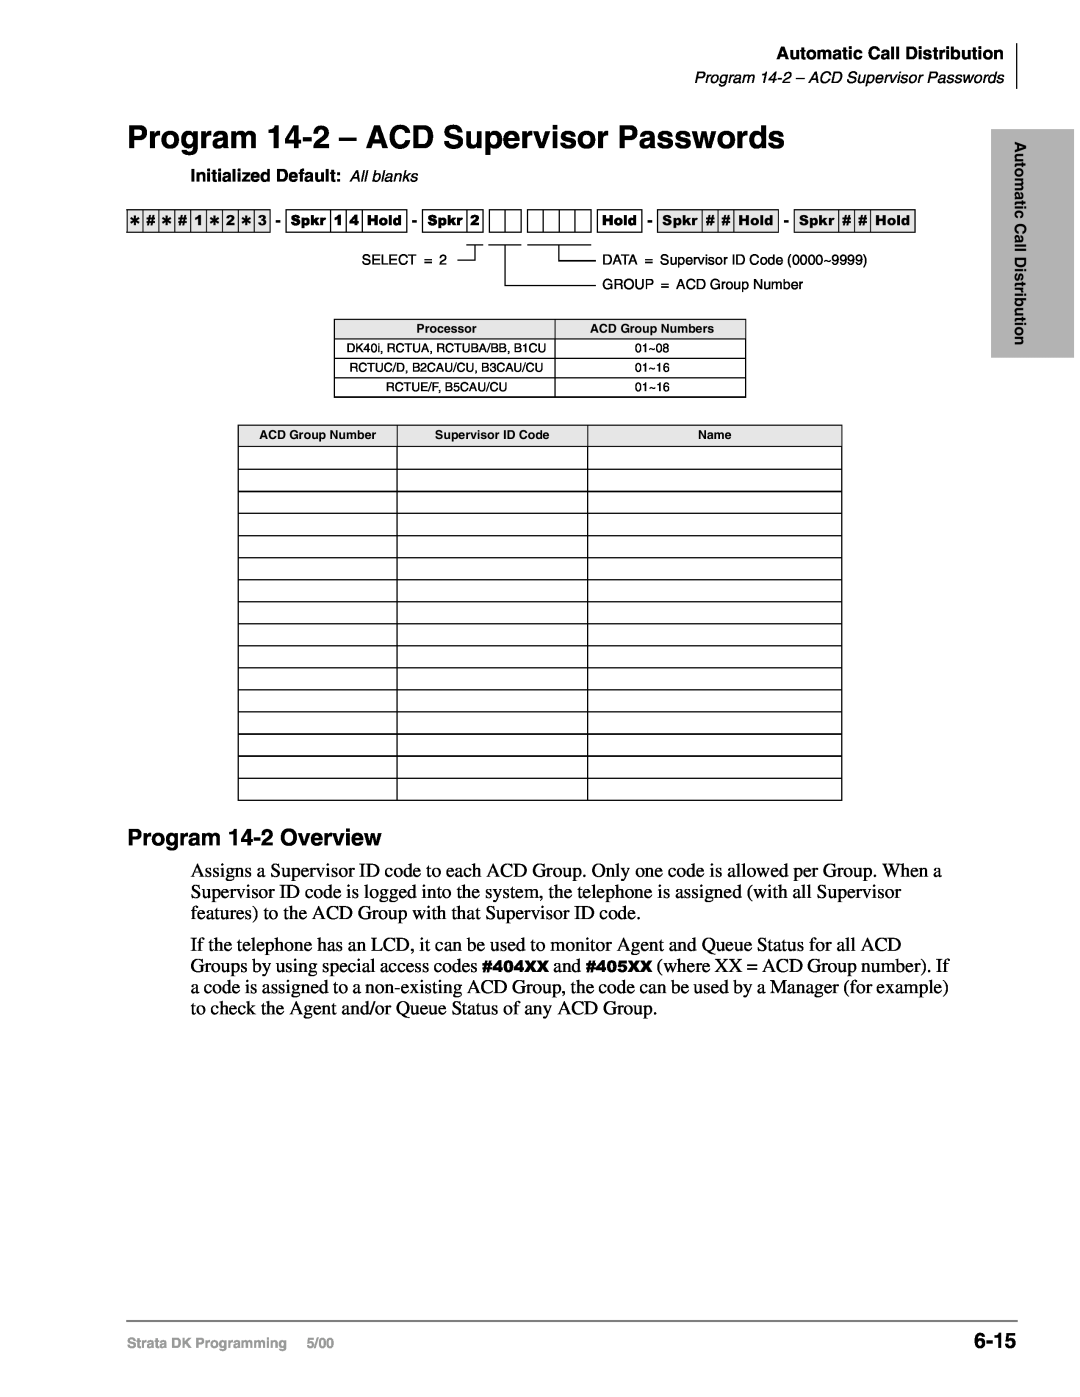 Toshiba dk14, DK40I, DK424I manual Program 14-2– ACD Supervisor Passwords, Program 14-2Overview, 6-15 